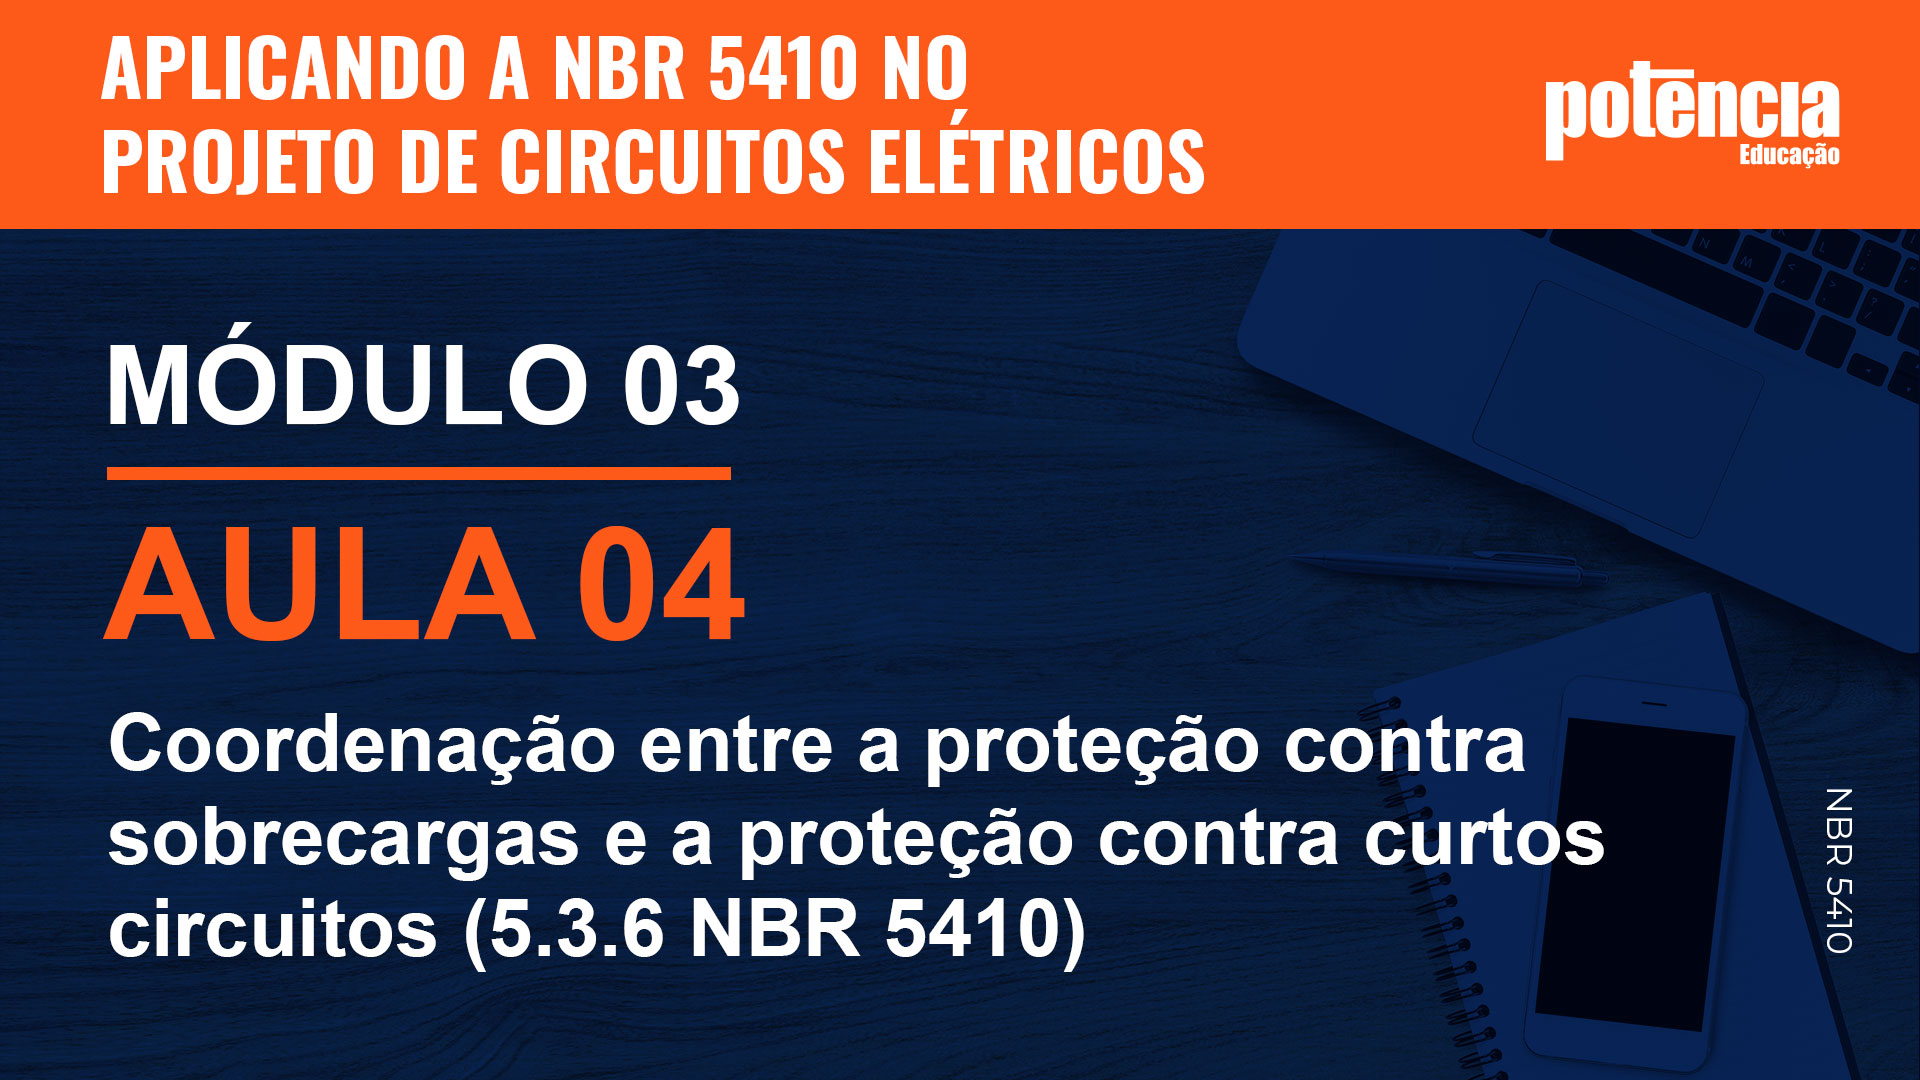 4 - Coordenação entre a proteção contra sobrecargas e a proteção contra curtos circuitos (5.3.6 NBR 5410)